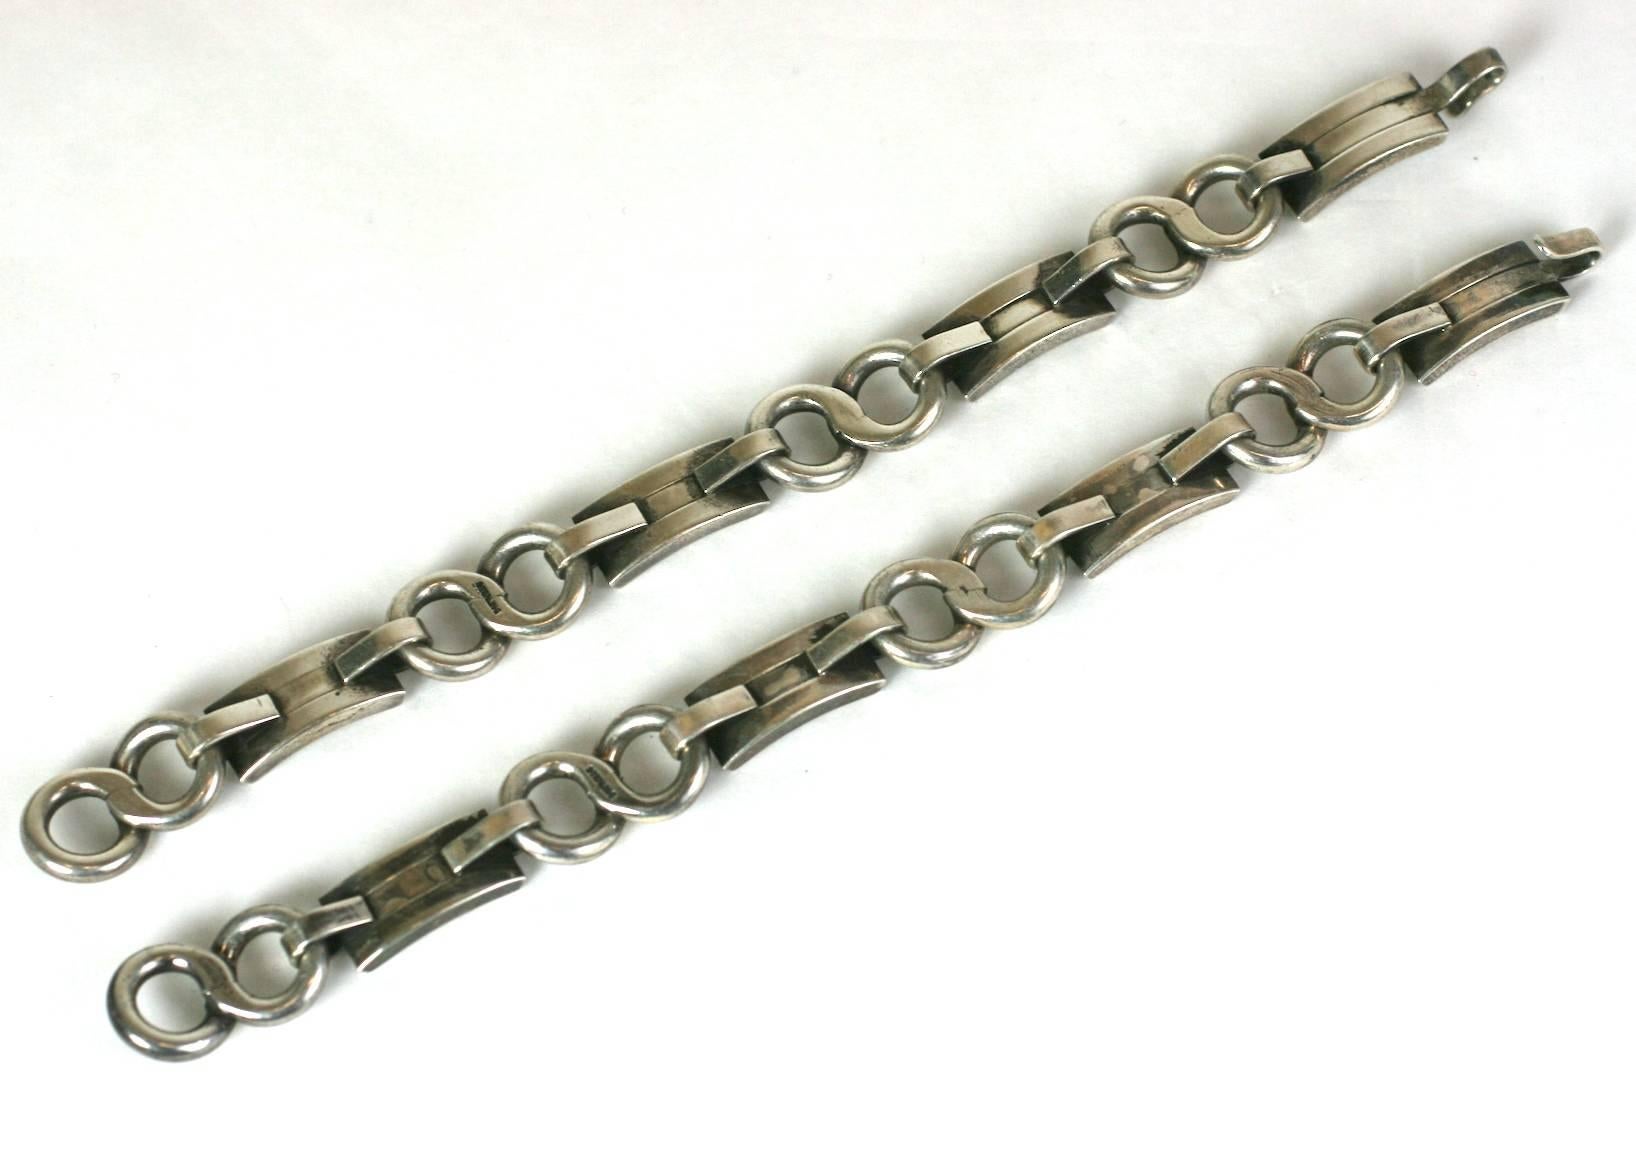 Paar erstaunliche Modernist Sterling Armbänder, Halskette Option, wenn beide kombiniert werden. Handgefertigt von einem talentierten Silberschmied aus extrem schwerem Sterlingsilber. 
Wunderschönes Design mit geschwungenen Deco-Bögen, die durch 8er